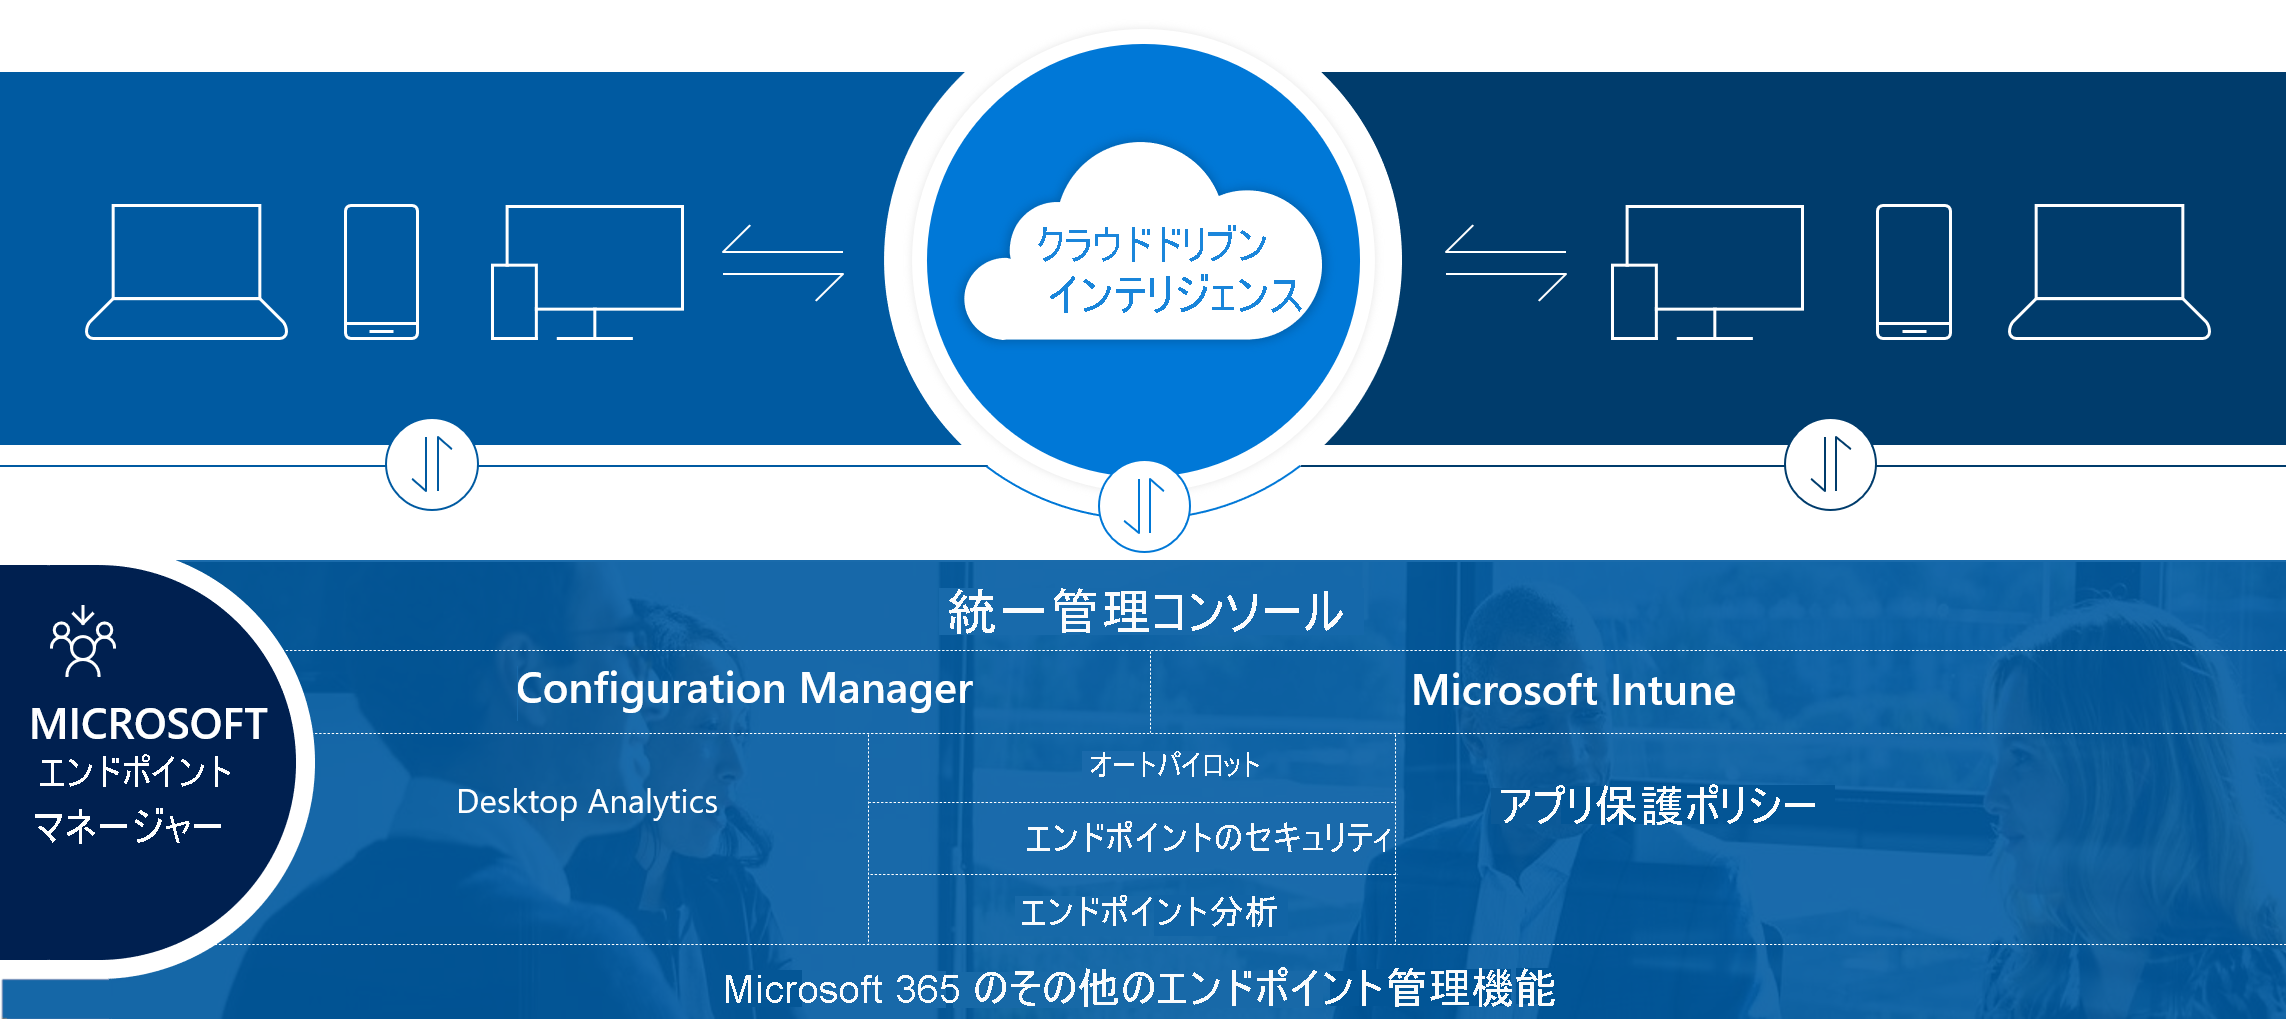 Diagram of Microsoft Intune.